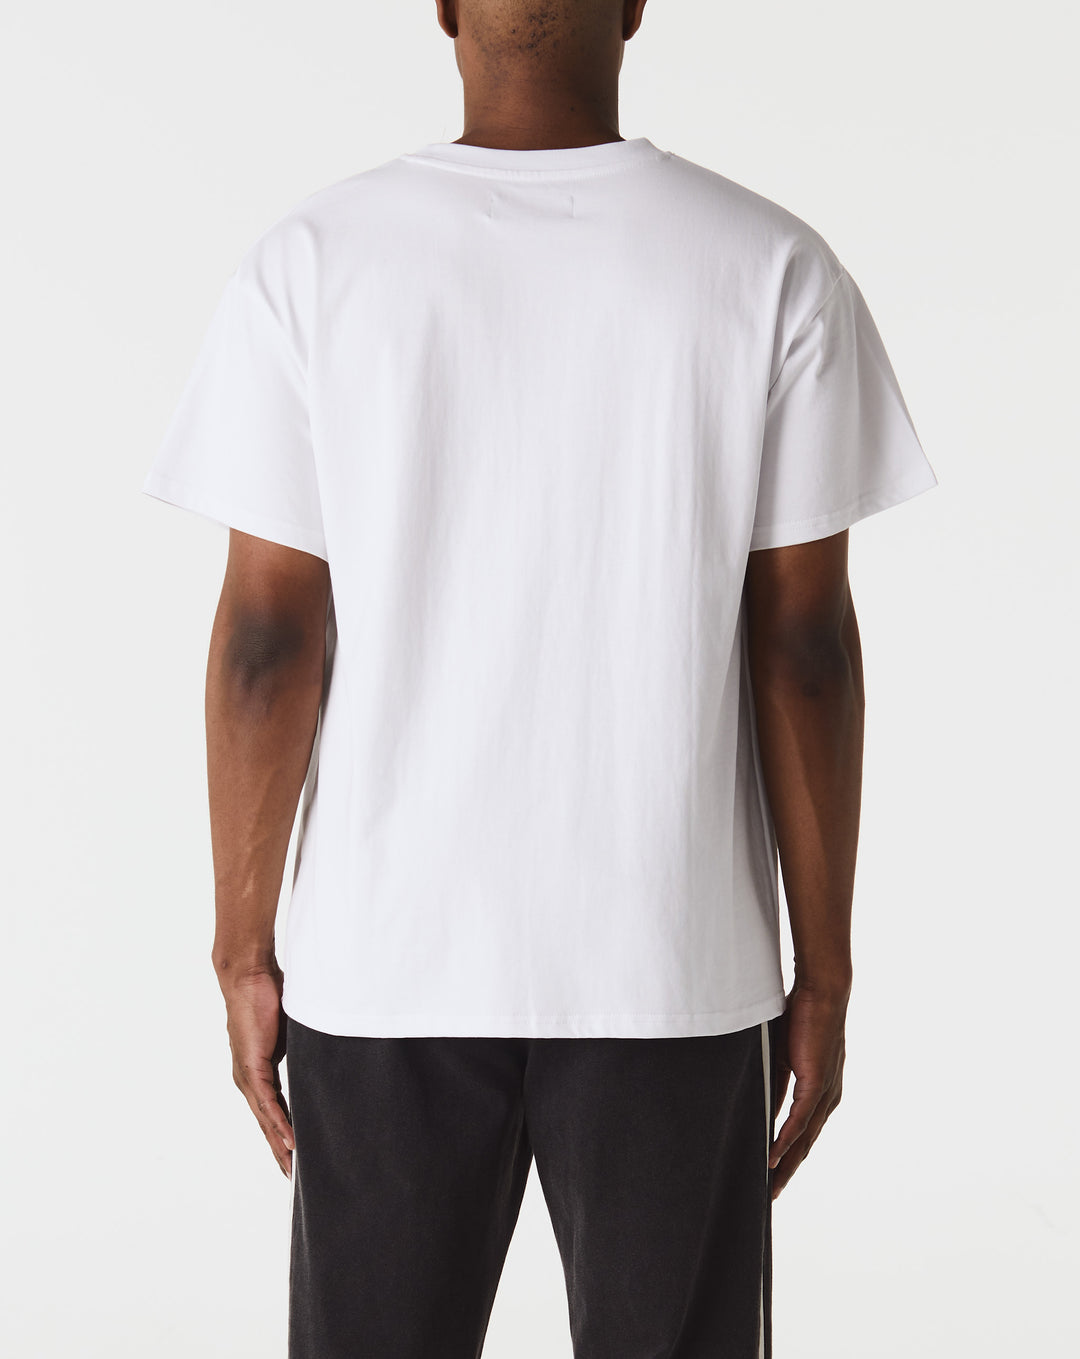 koche colour block button up shirt item Training T-Shirt  - Cheap Erlebniswelt-fliegenfischen Jordan outlet